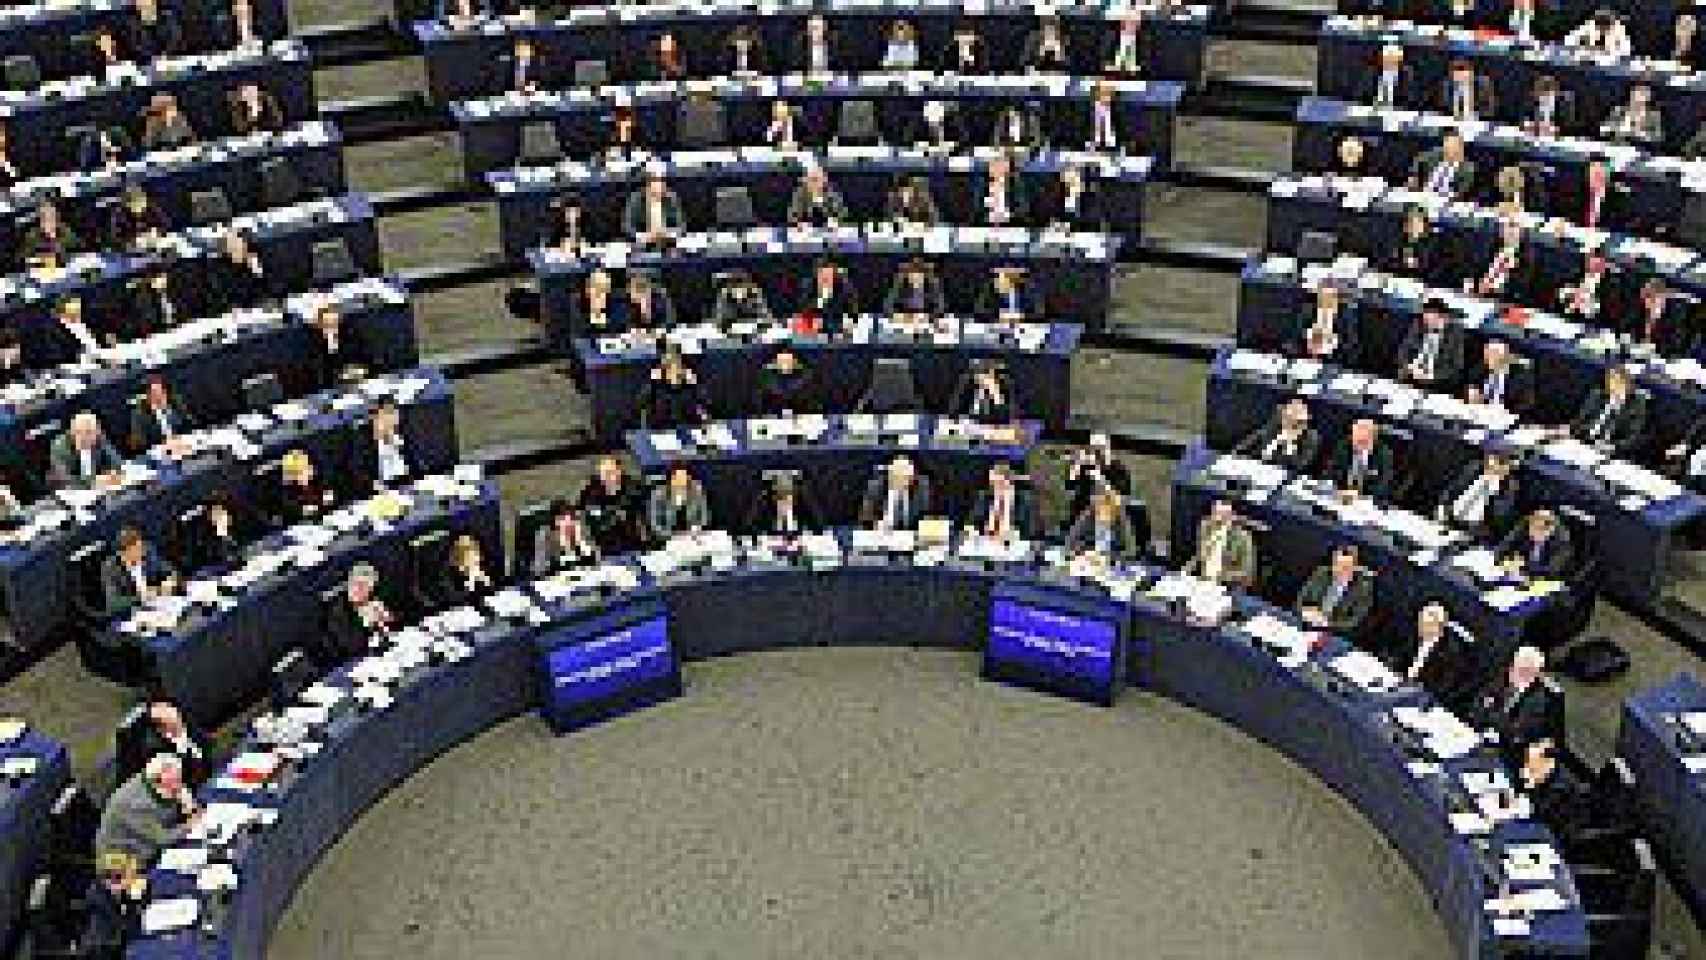 Hemiciclo del Parlamento Europeo en Estrasburgo